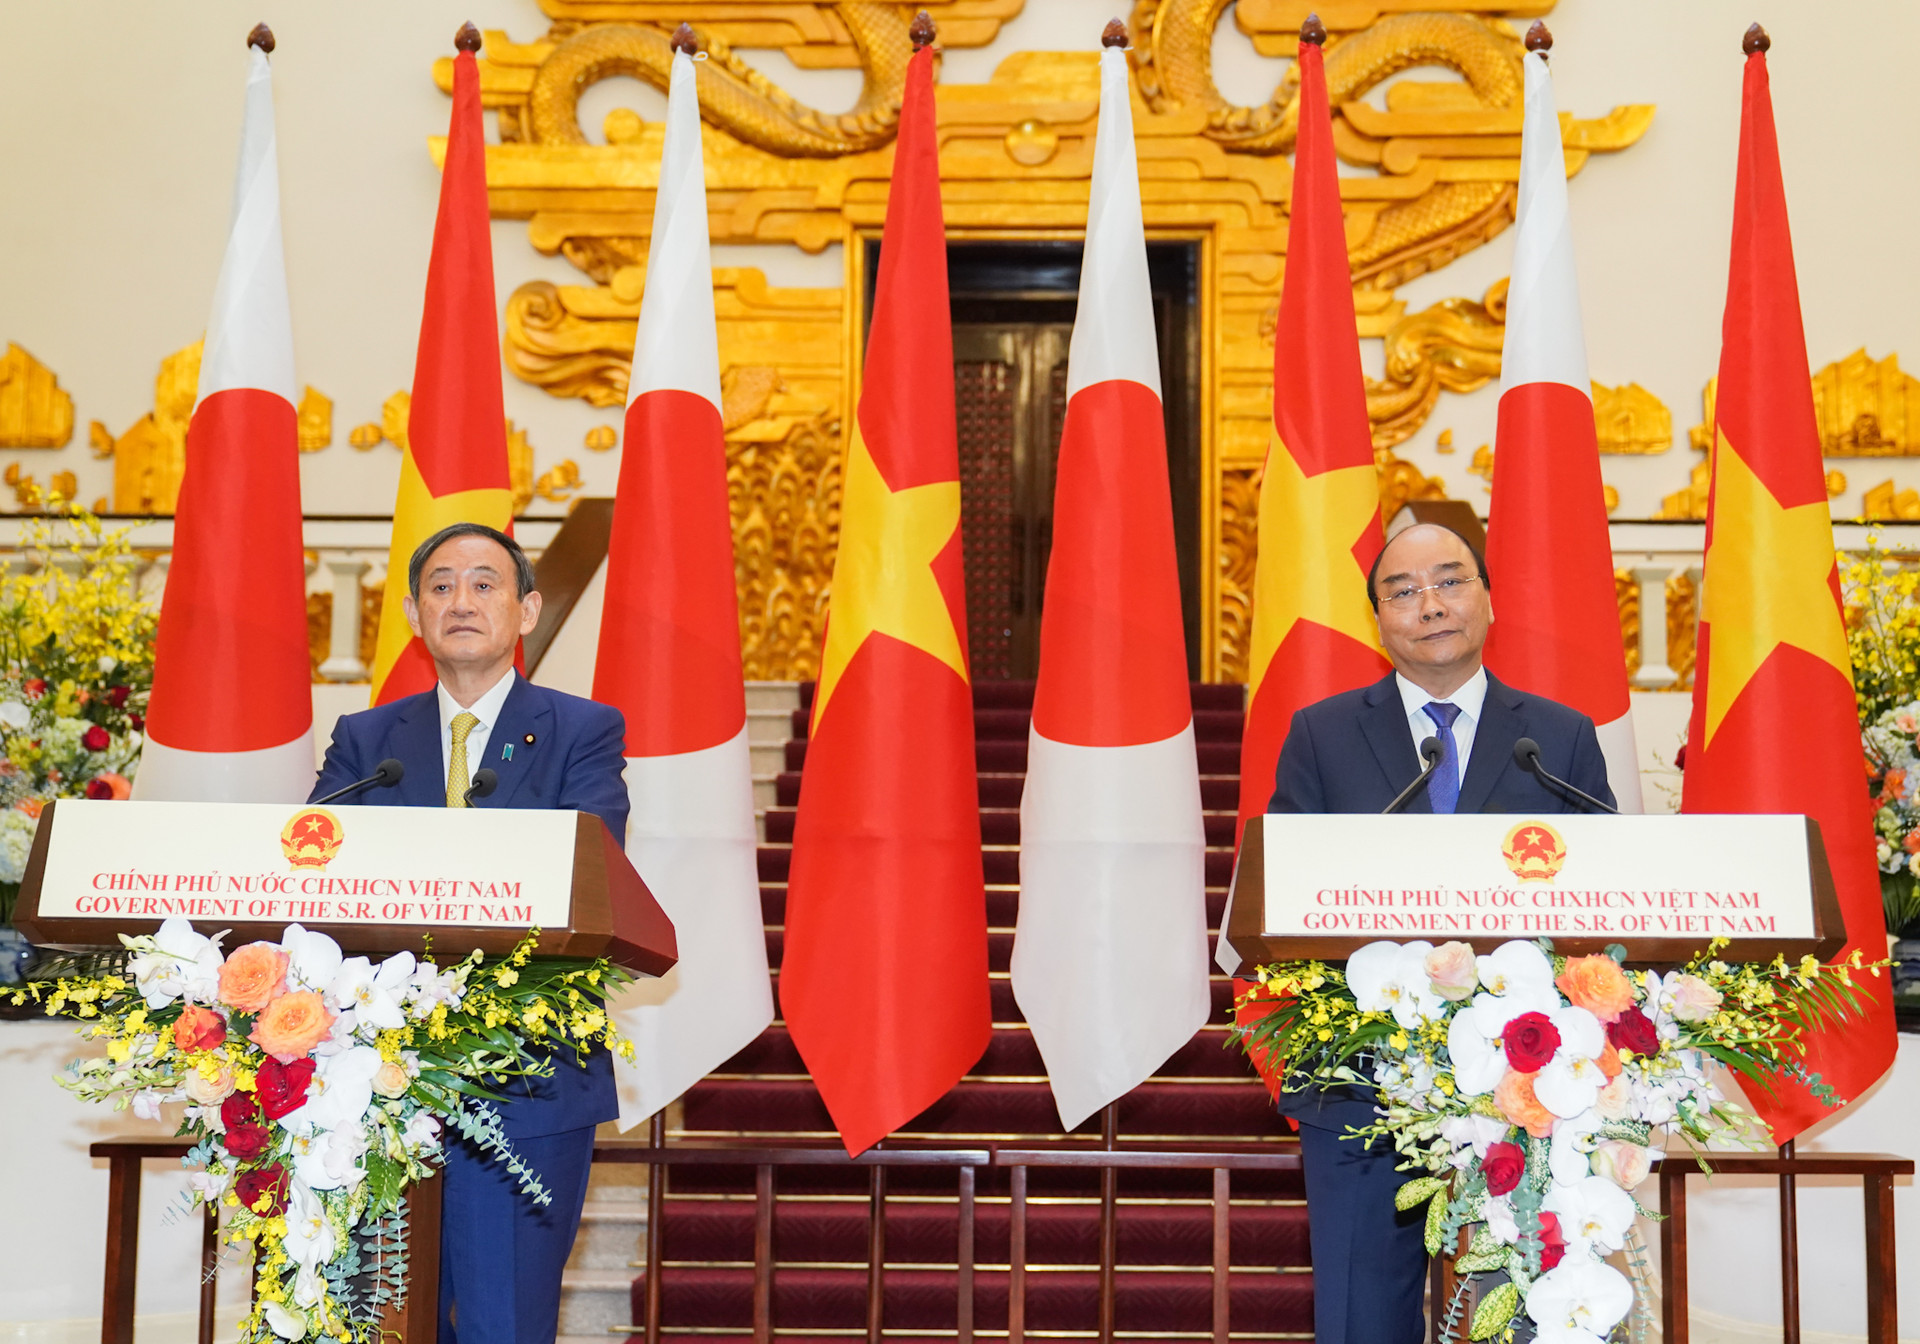 Thủ tướng Nhật Bản: Cam kết cùng Việt Nam phát triển quan hệ hai nước, đóng góp cho thịnh vượng ở khu vực